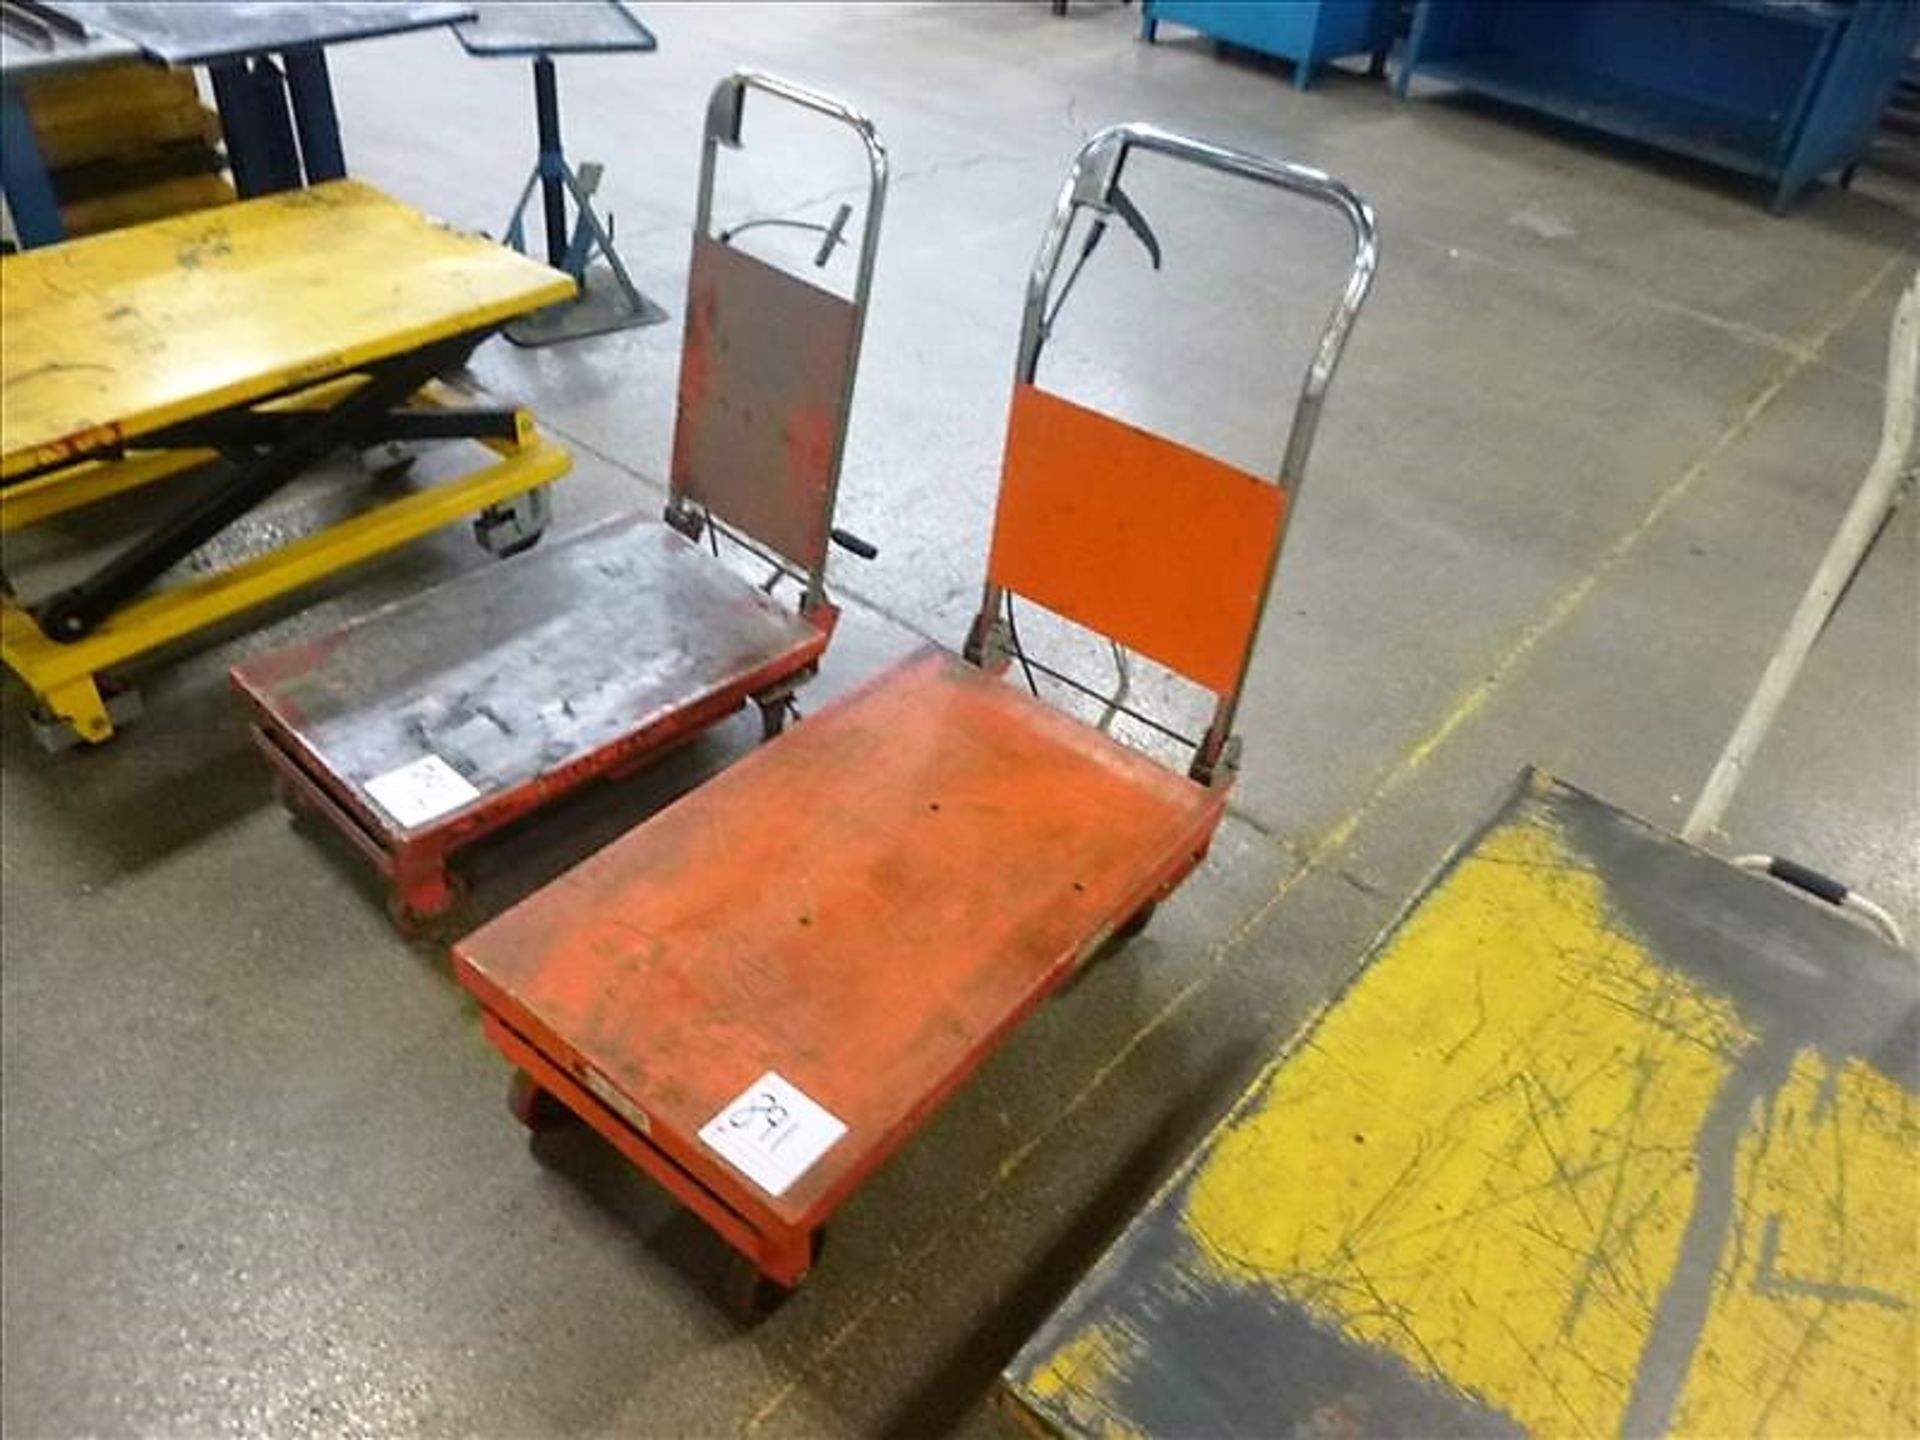 Scissor Lift Cart, approx. 20" x 32"